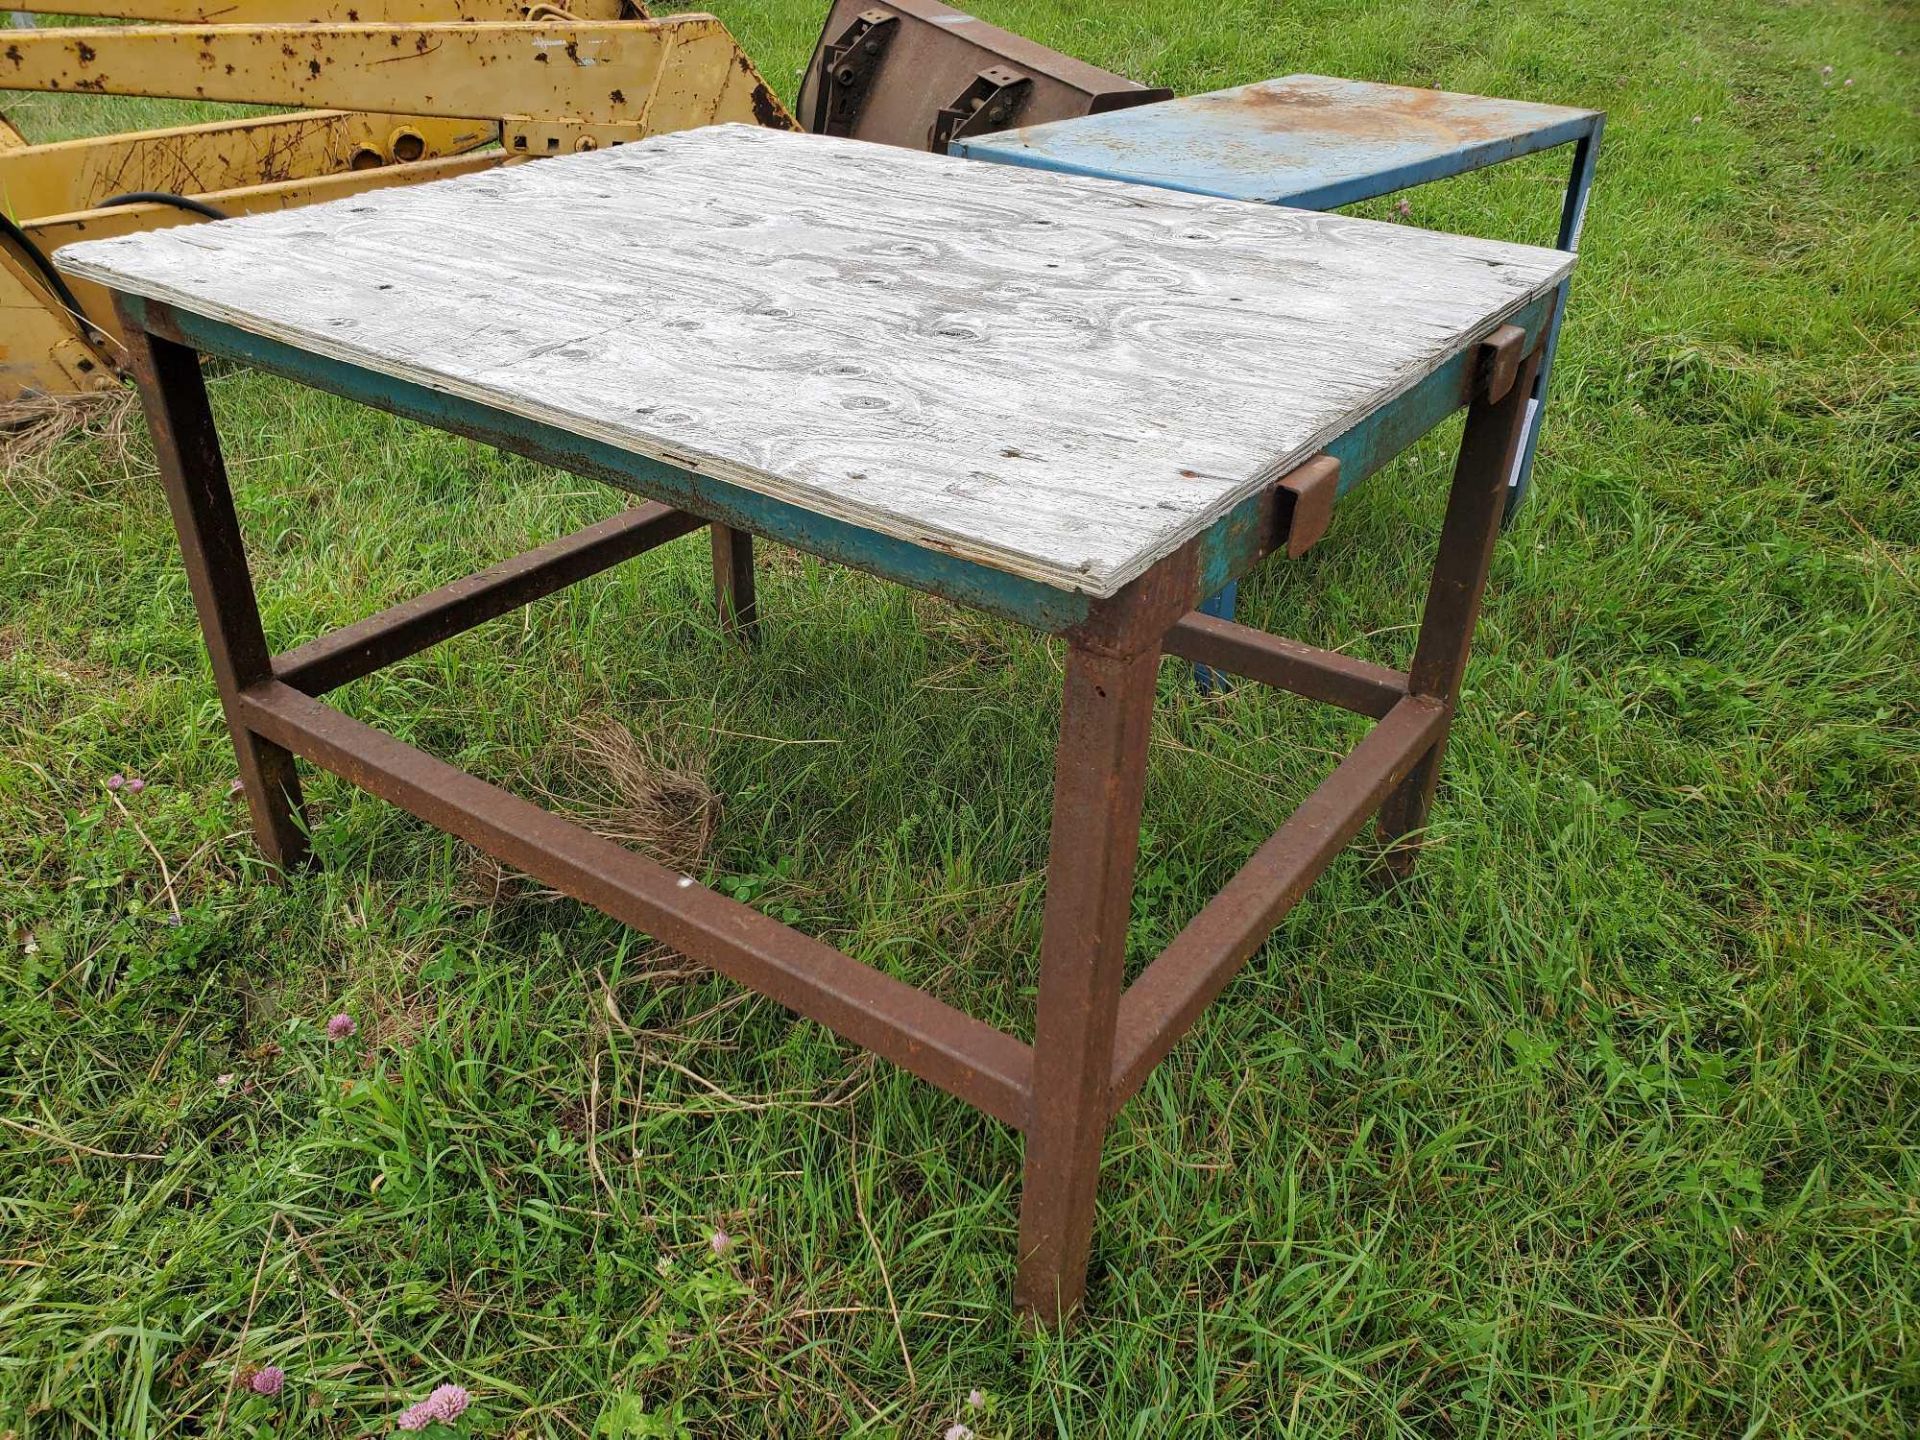 steel frame work table / etablie a base d'acier